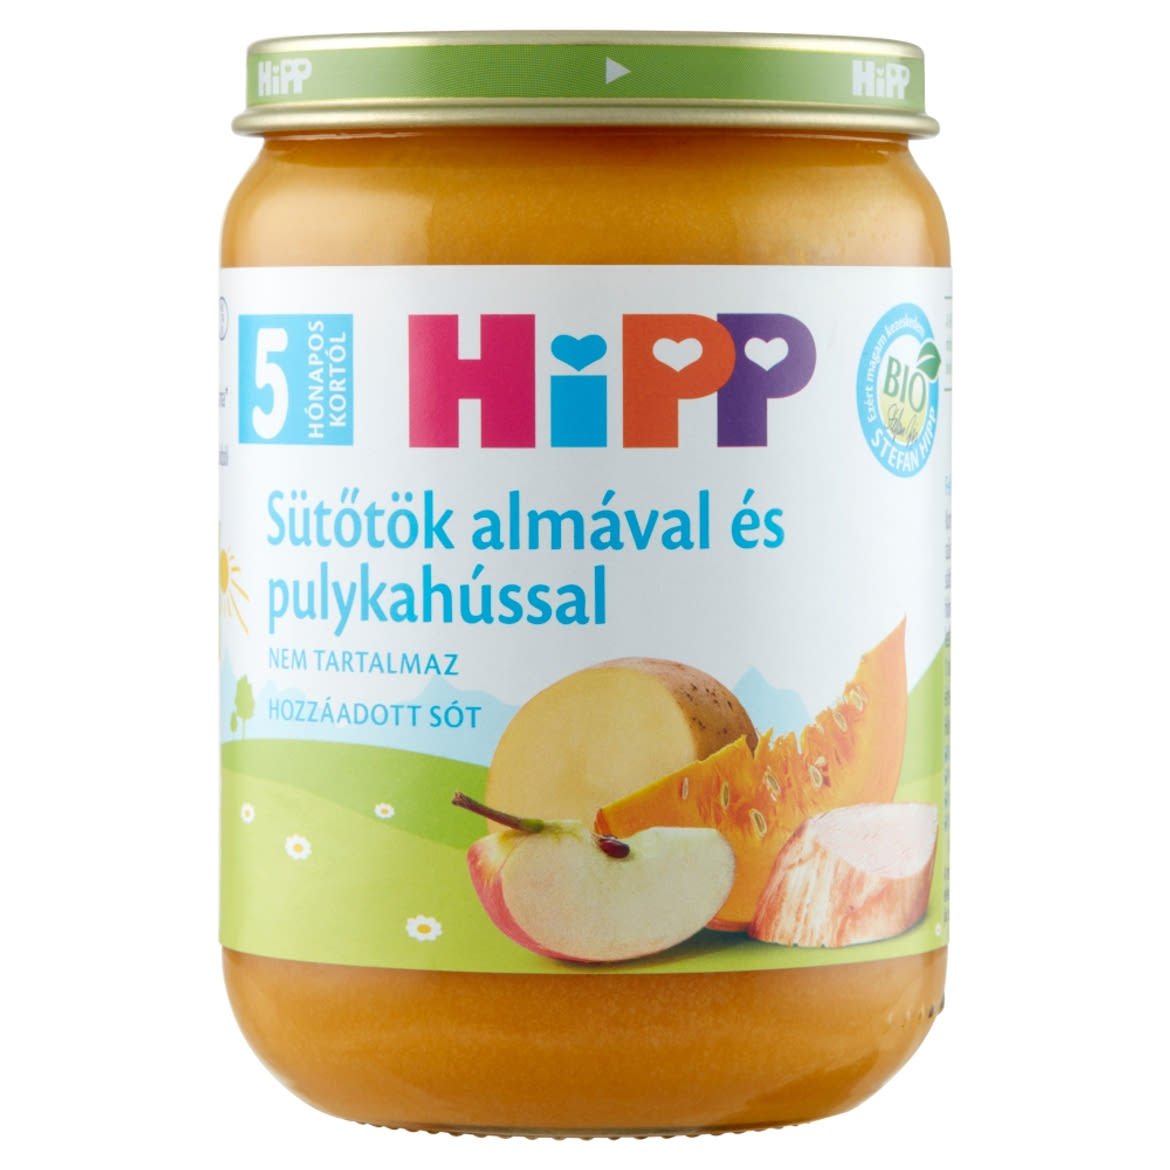 HiPP bio sütőtök almával és pulykahússal bébiétel 5 hónapos kortól